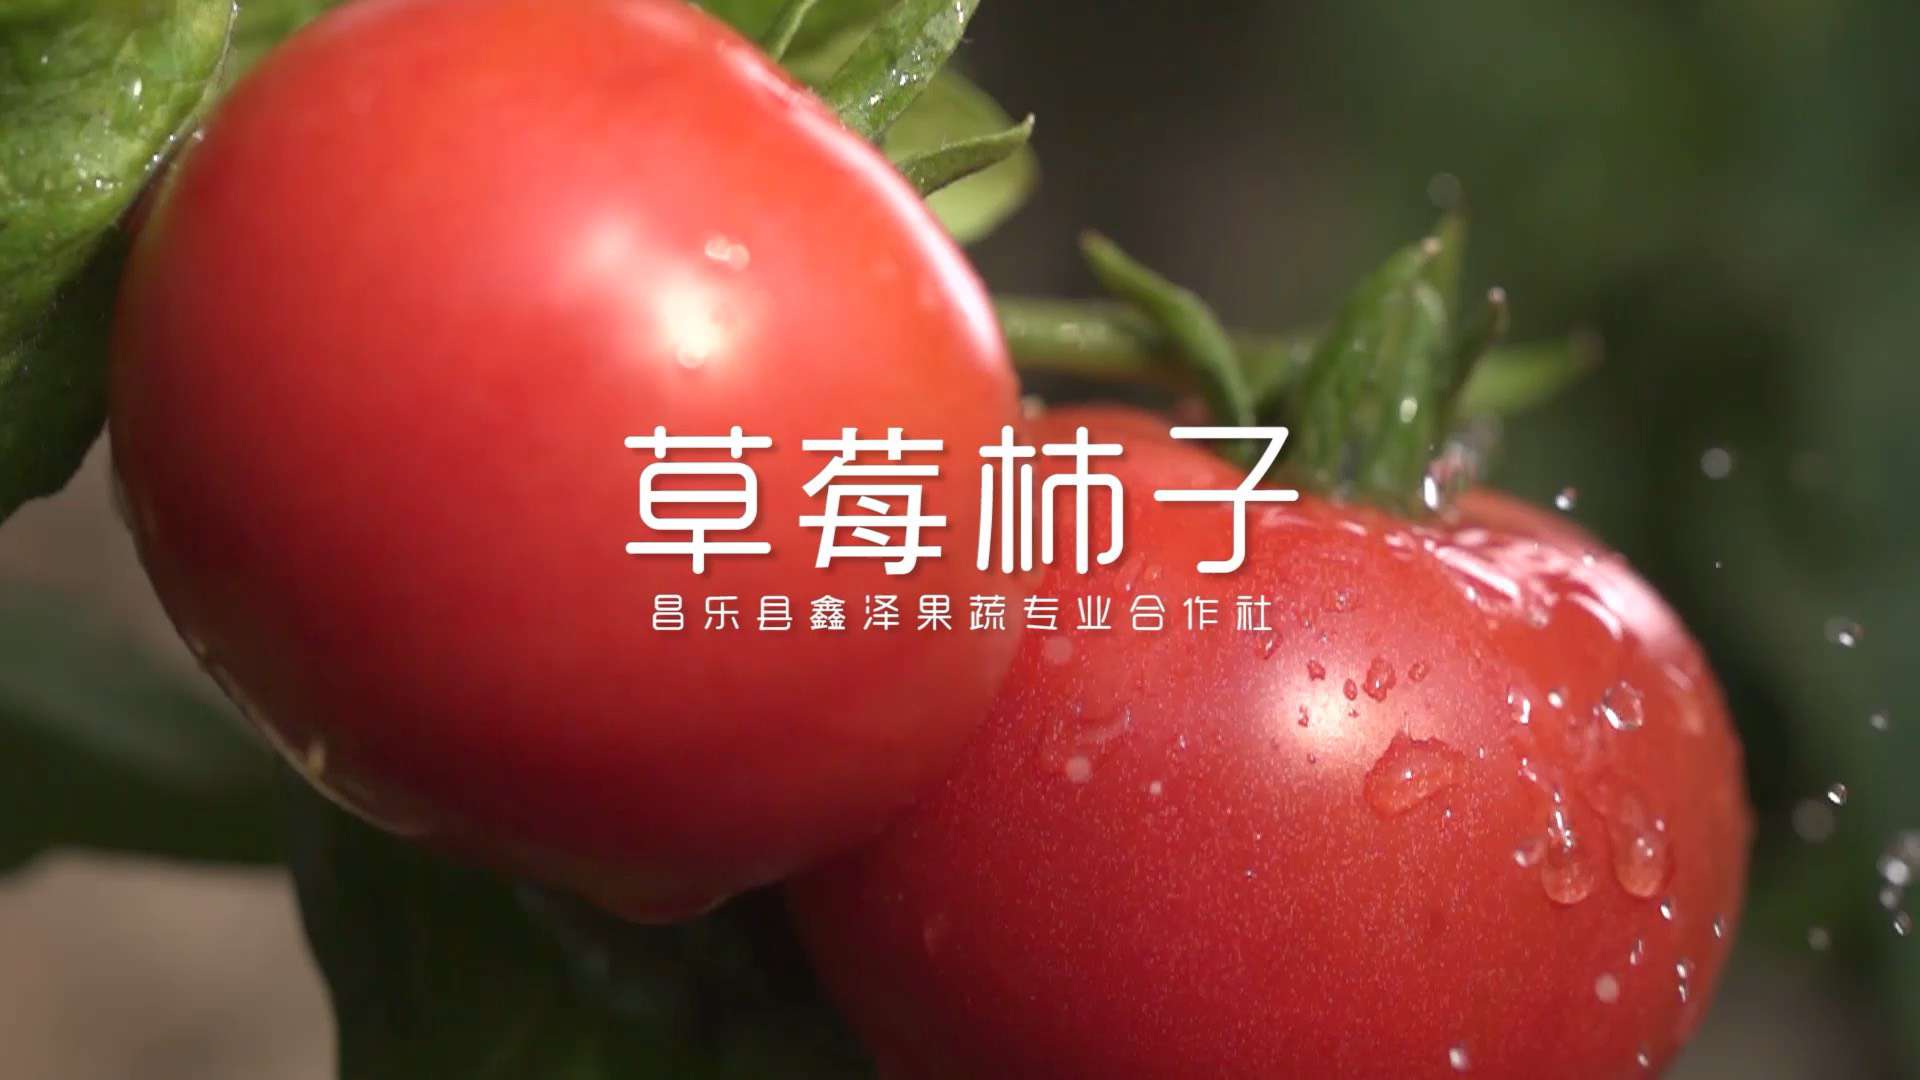 潍坊蔬菜大棚种植的蜜蜂授粉的草莓柿子